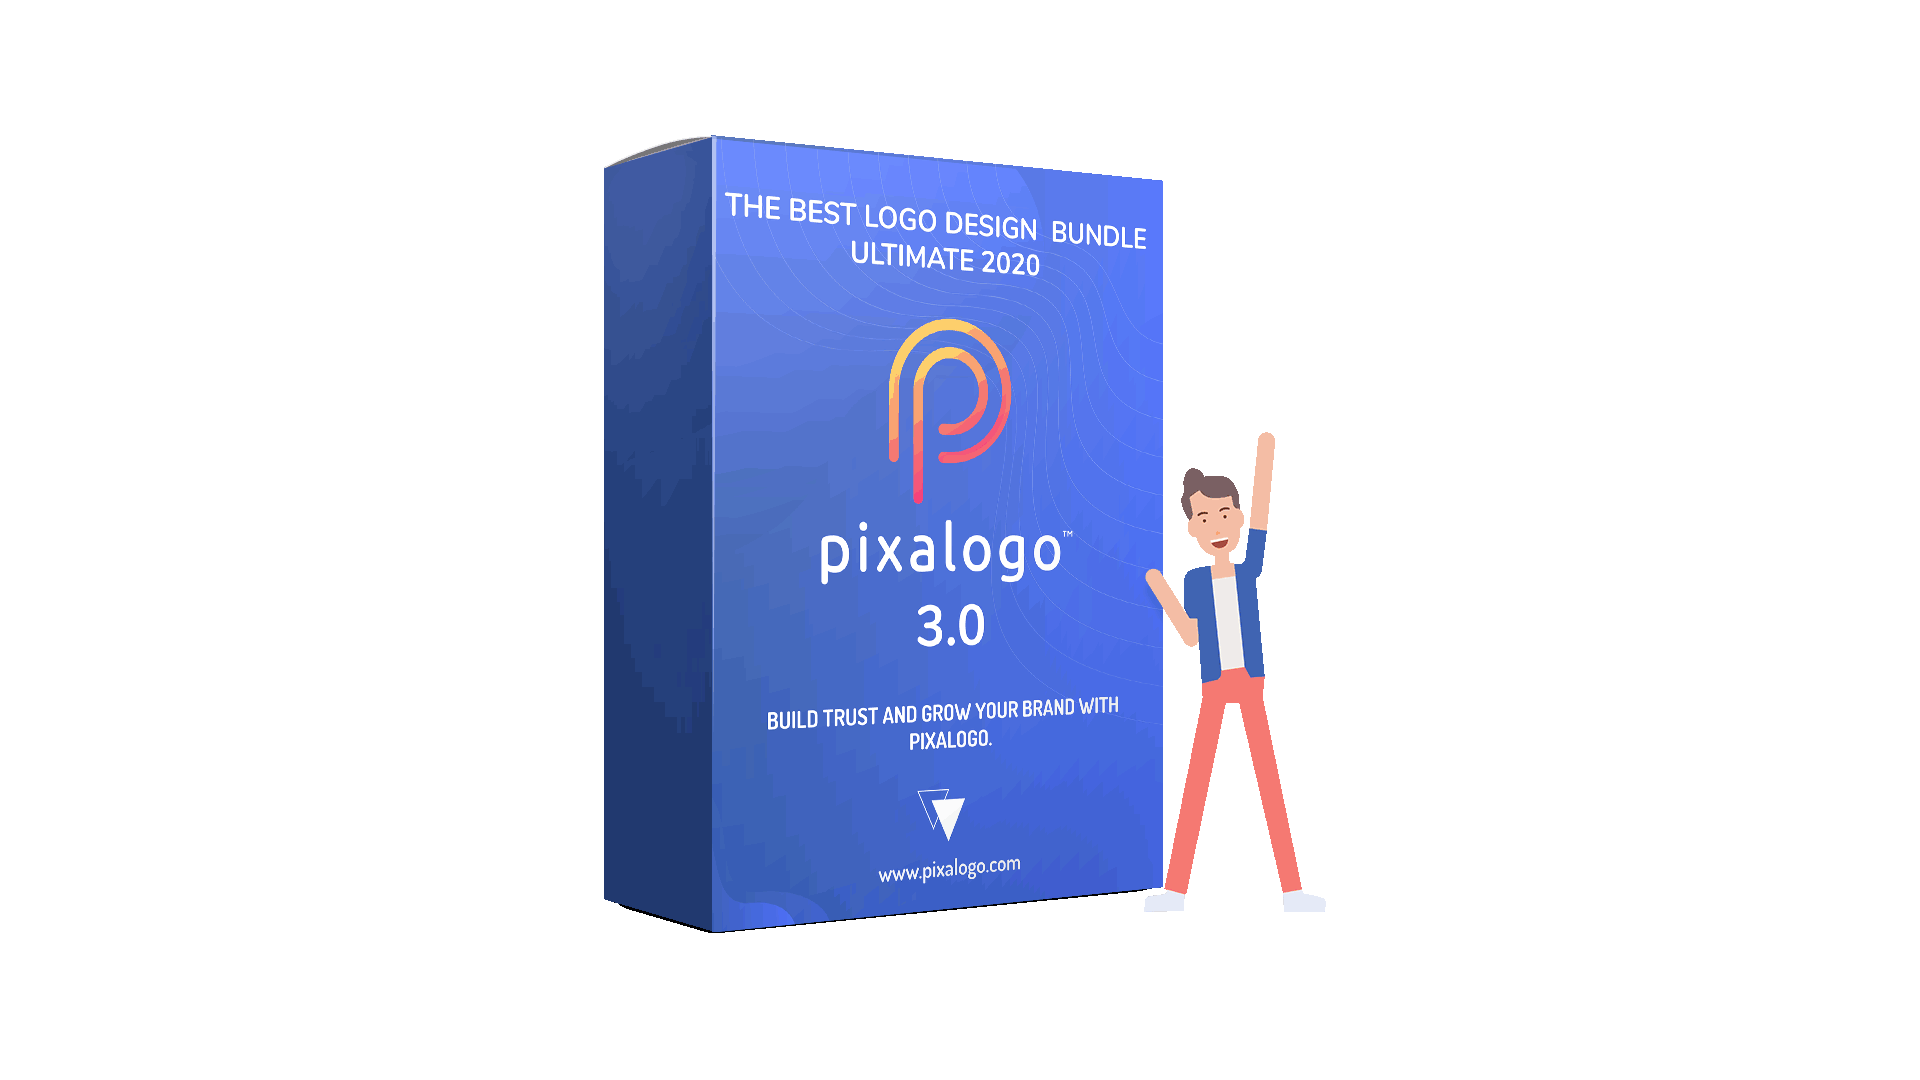 [GET] Pixalogo 3.0 – The Best Logo Design Bundle Ultimate 2020 Download